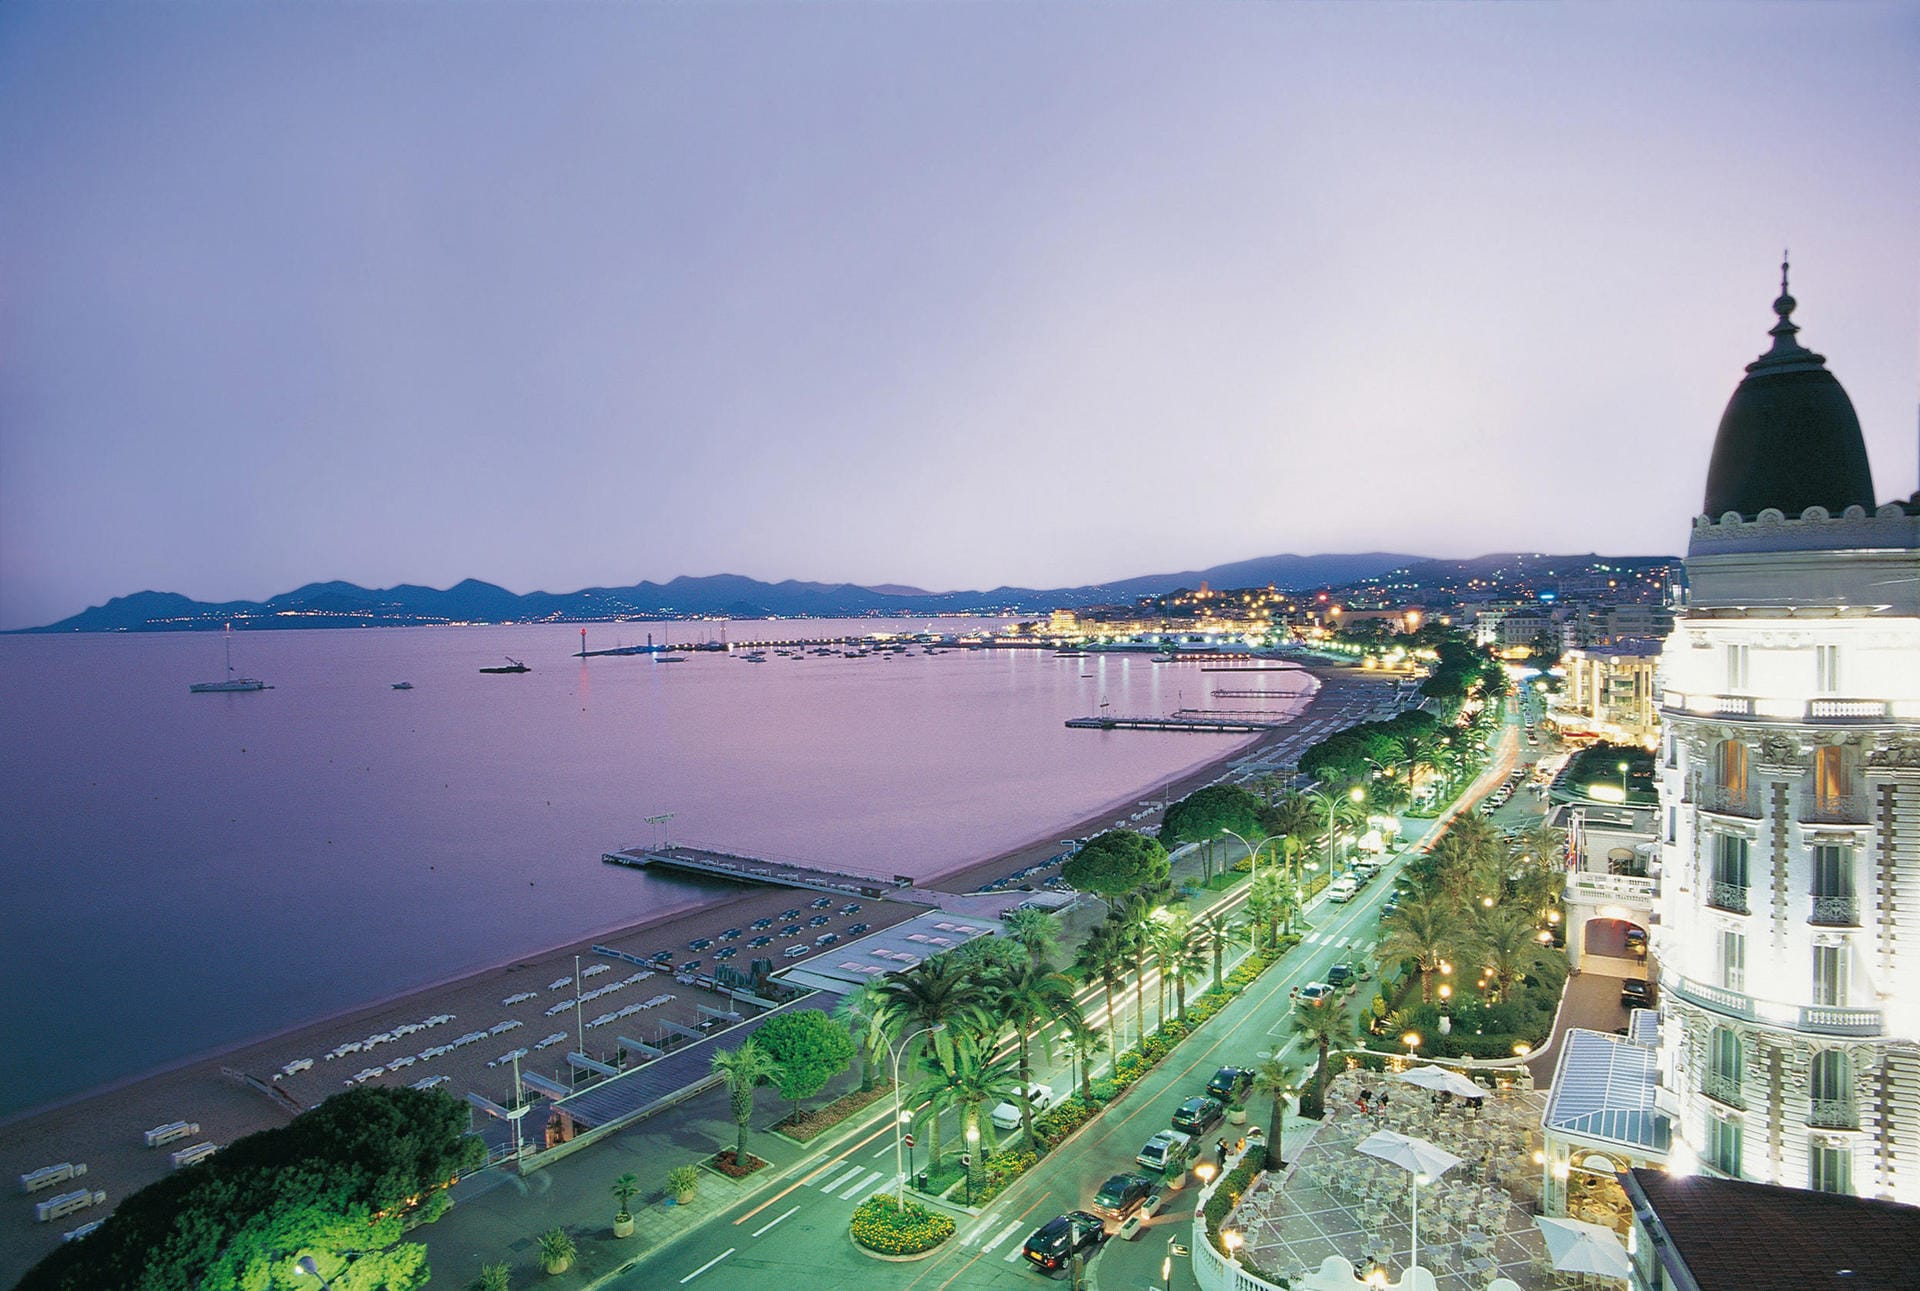 Die Uferpromenade in Cannes ist gesäumt von hohen Palmen, gepflegten Parkanlagen und historischen Palästen.